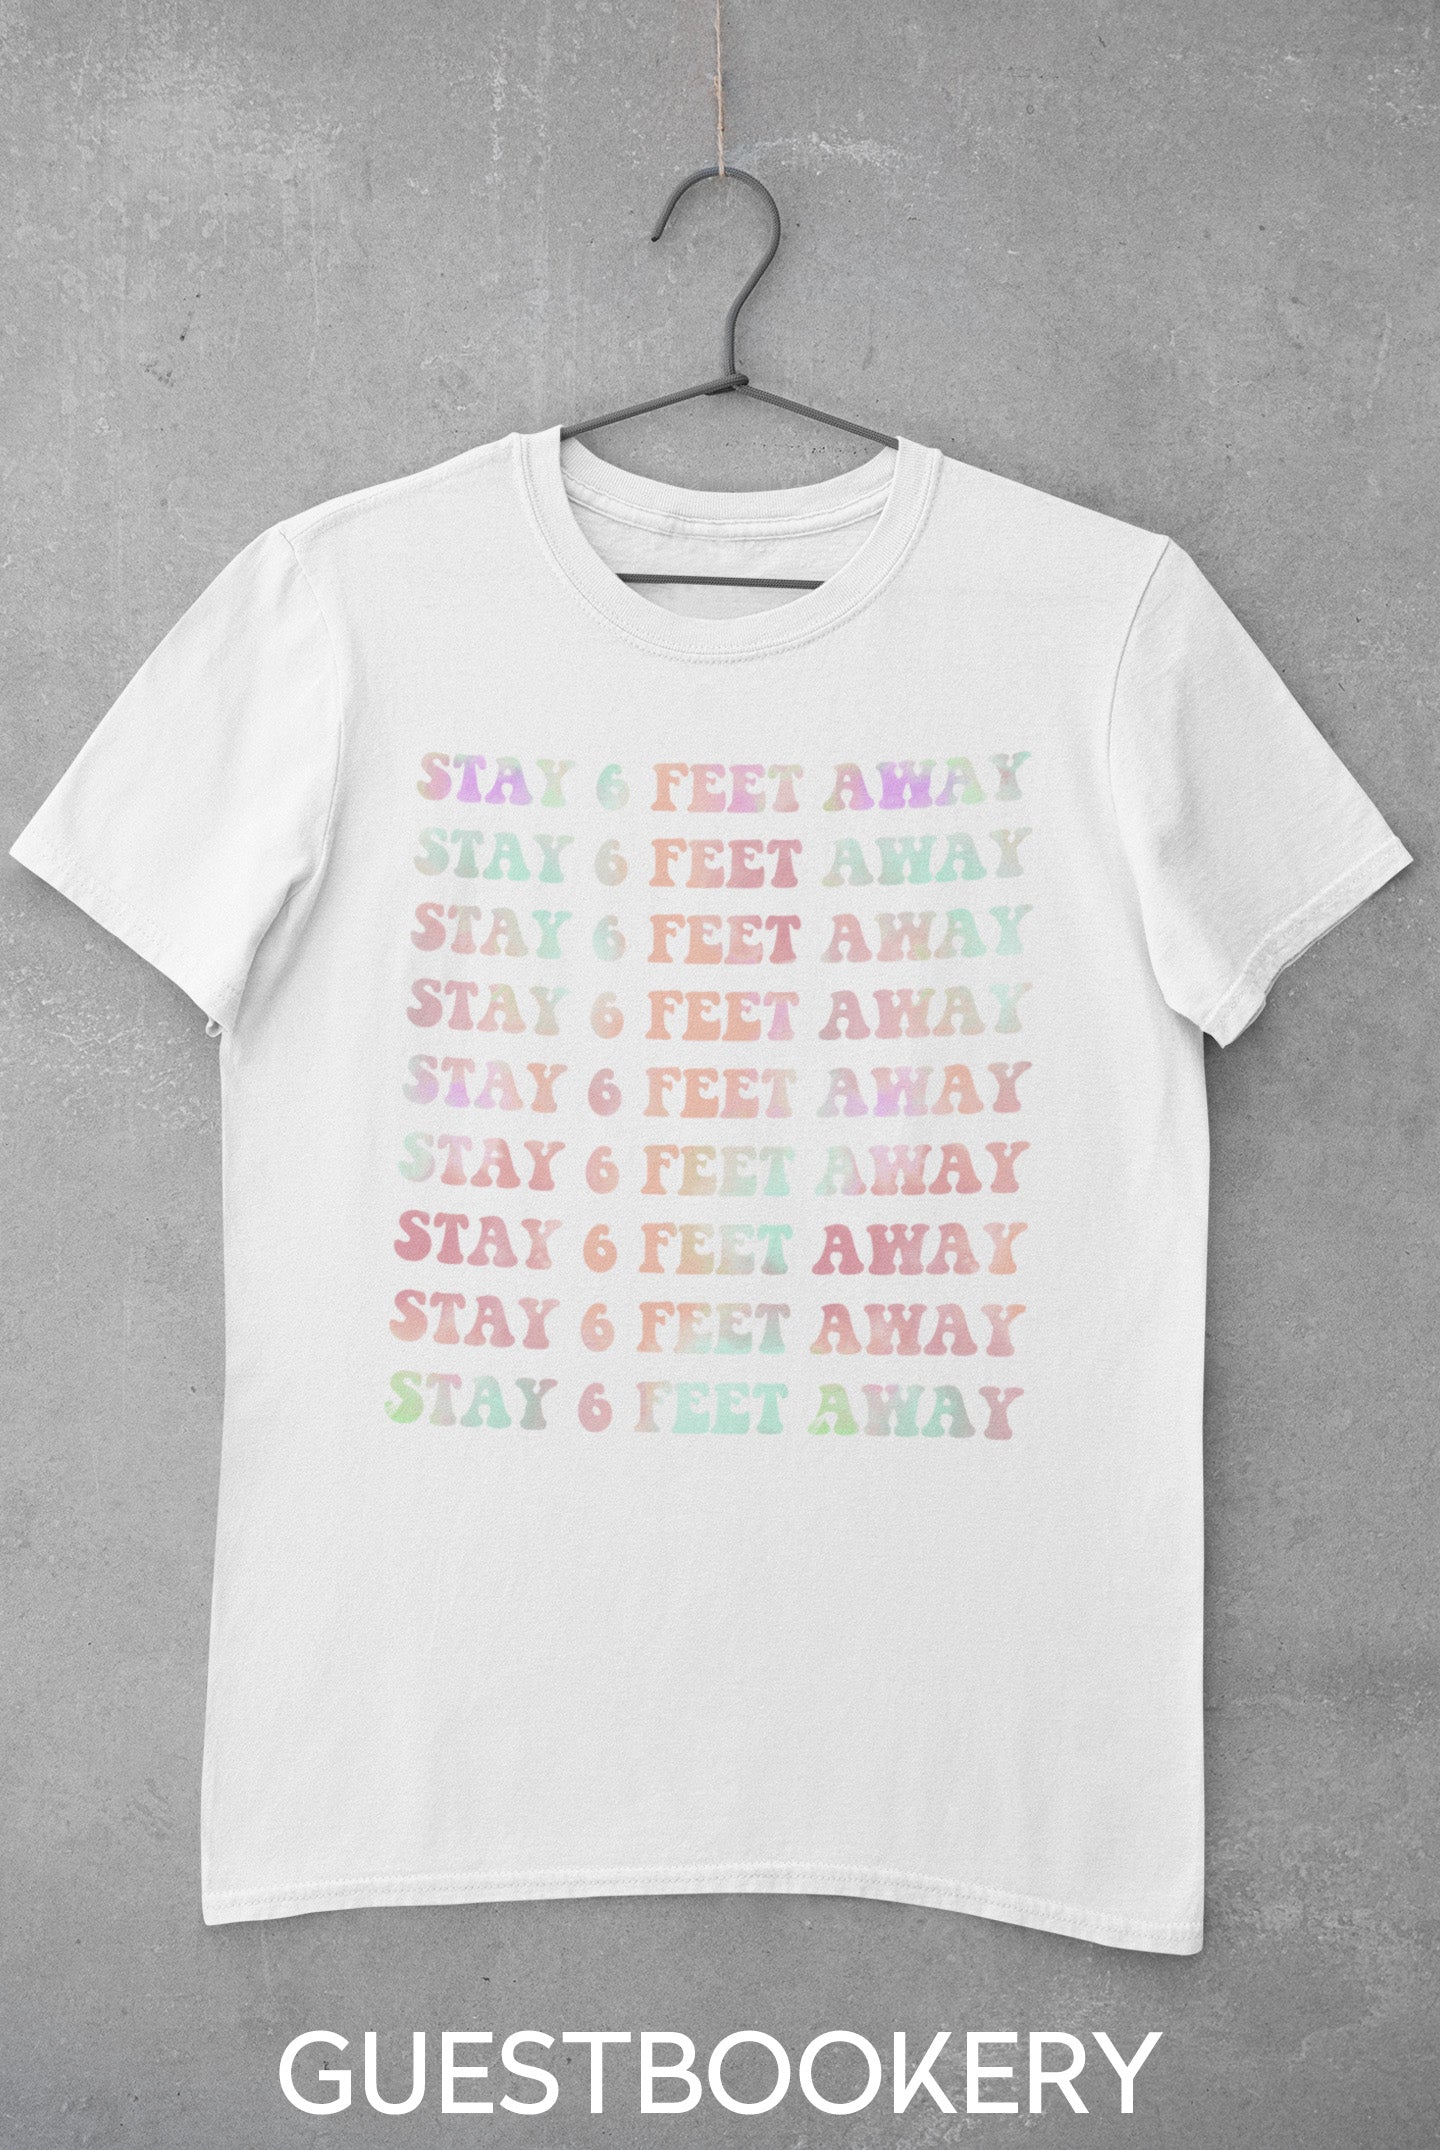 Stay 6 Feet Away T-shirt